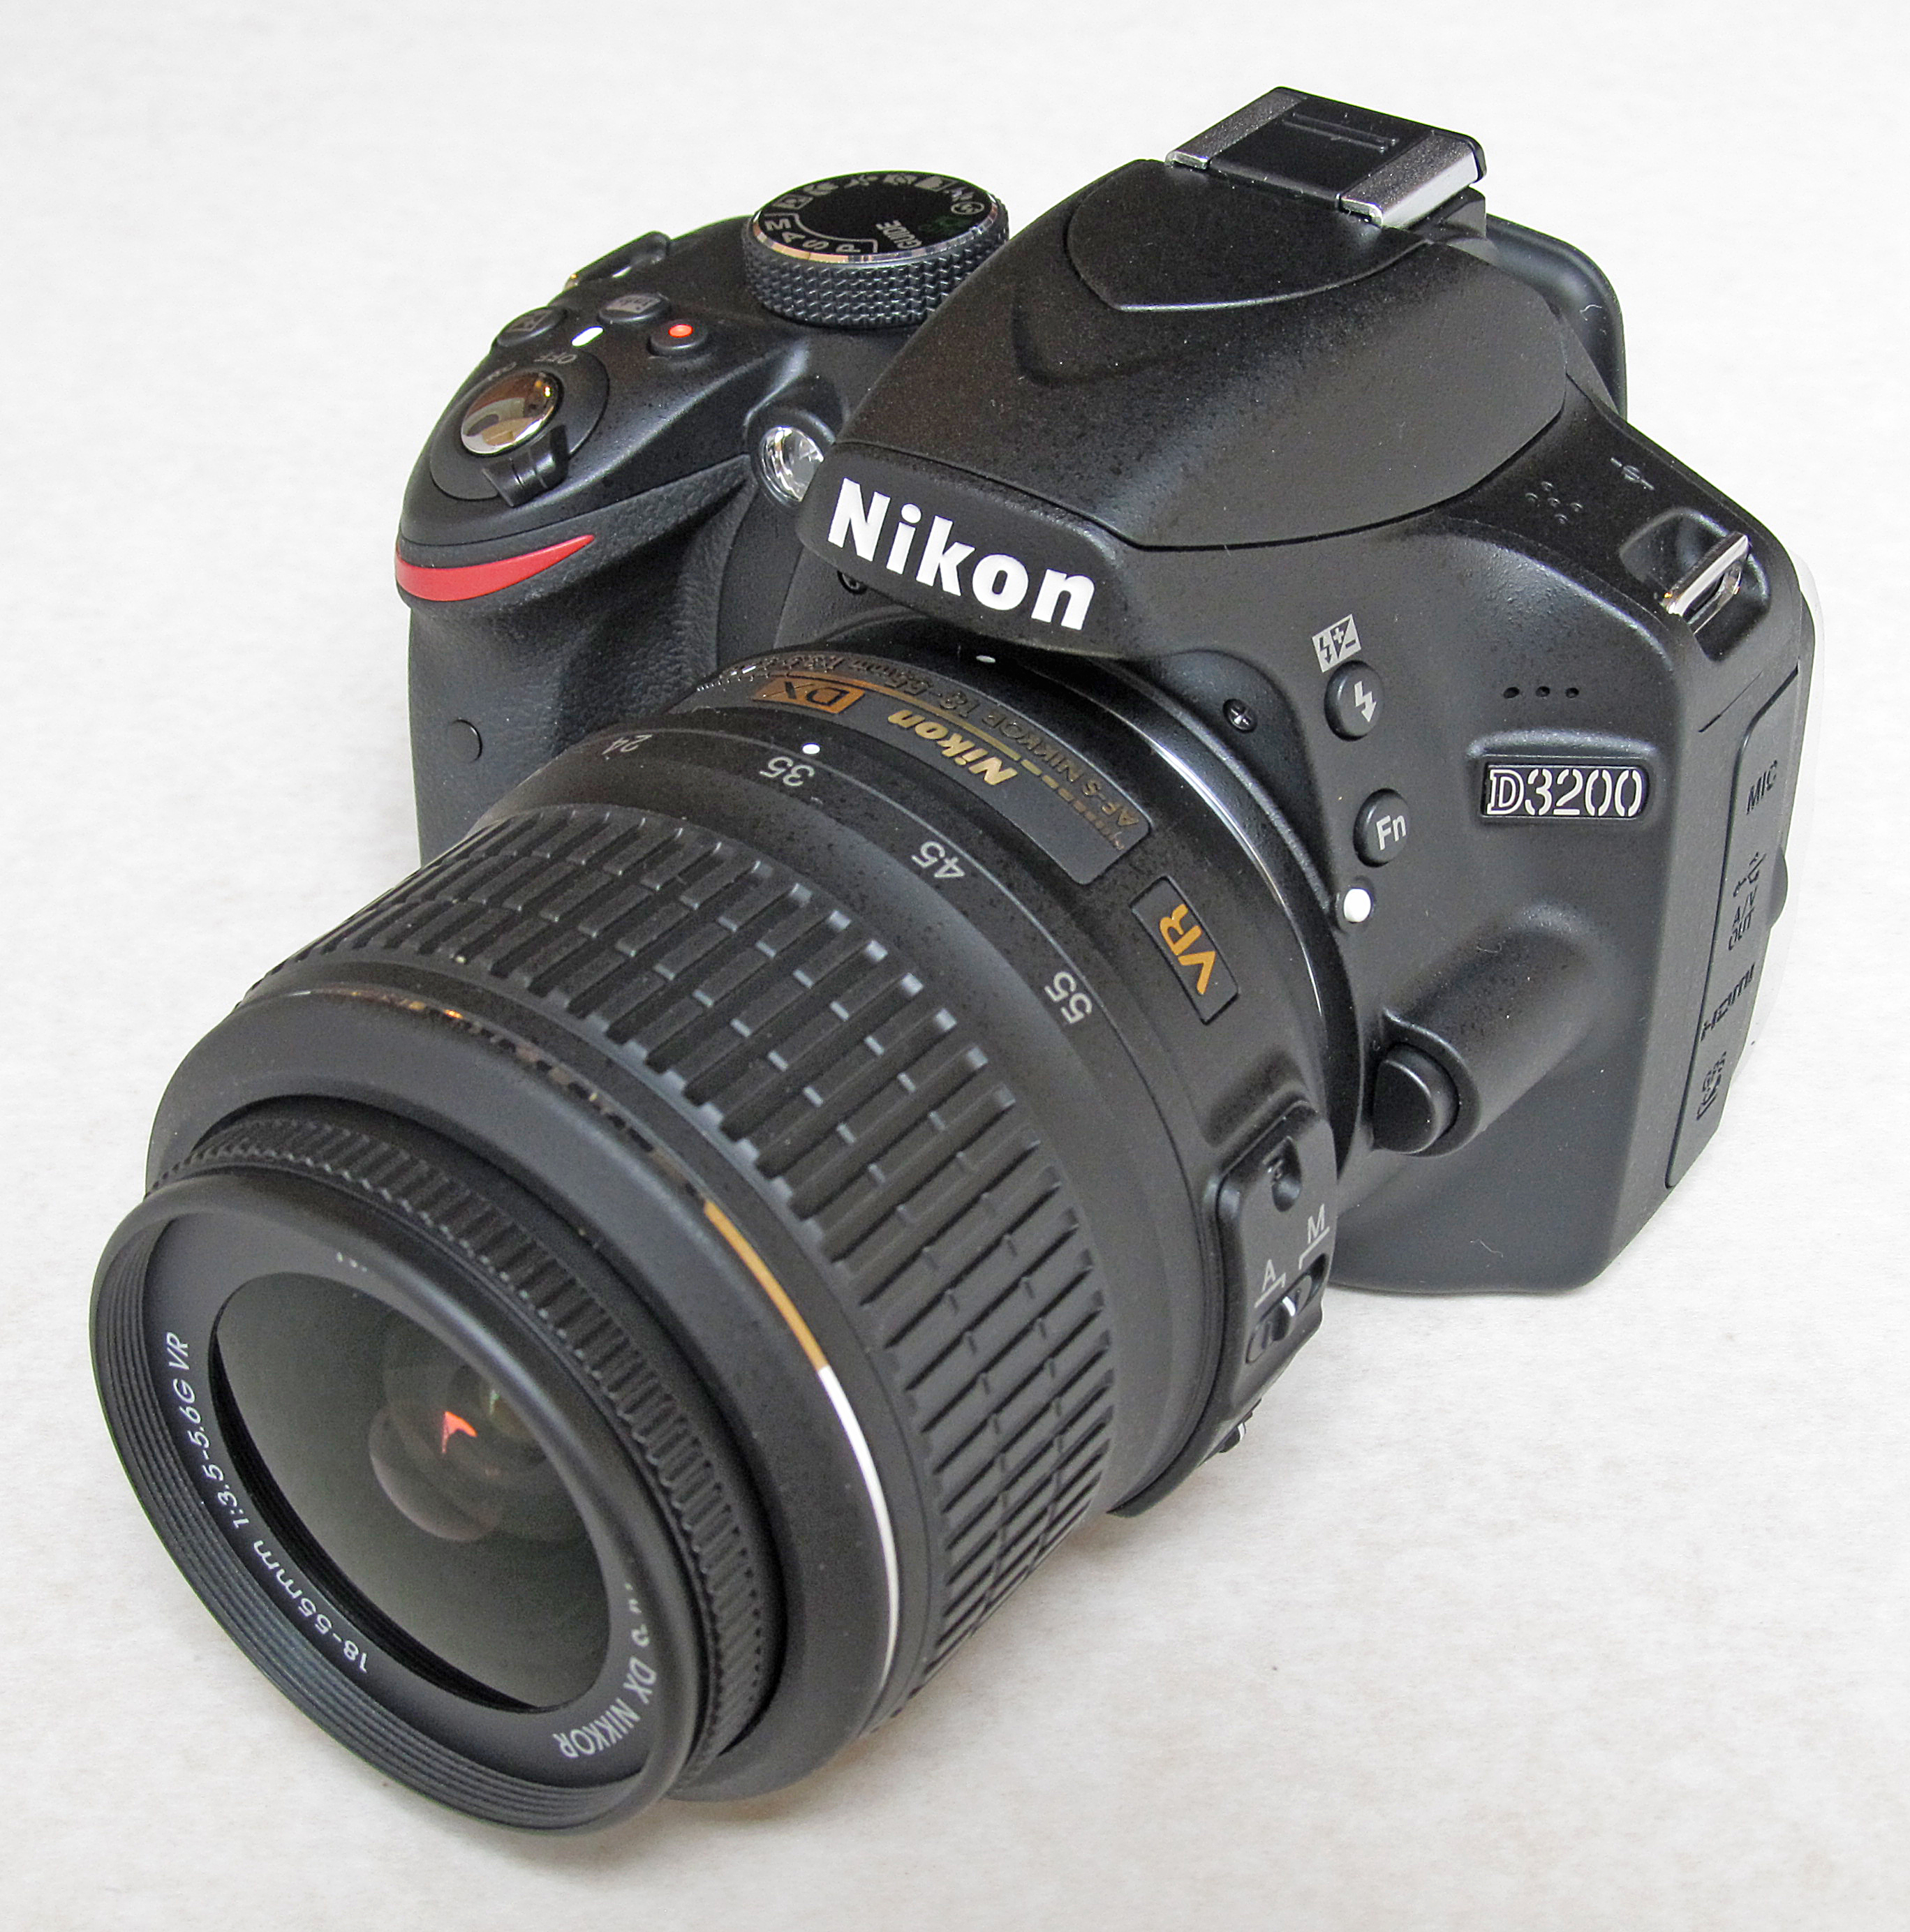 NikonD3200 - デジタルカメラ